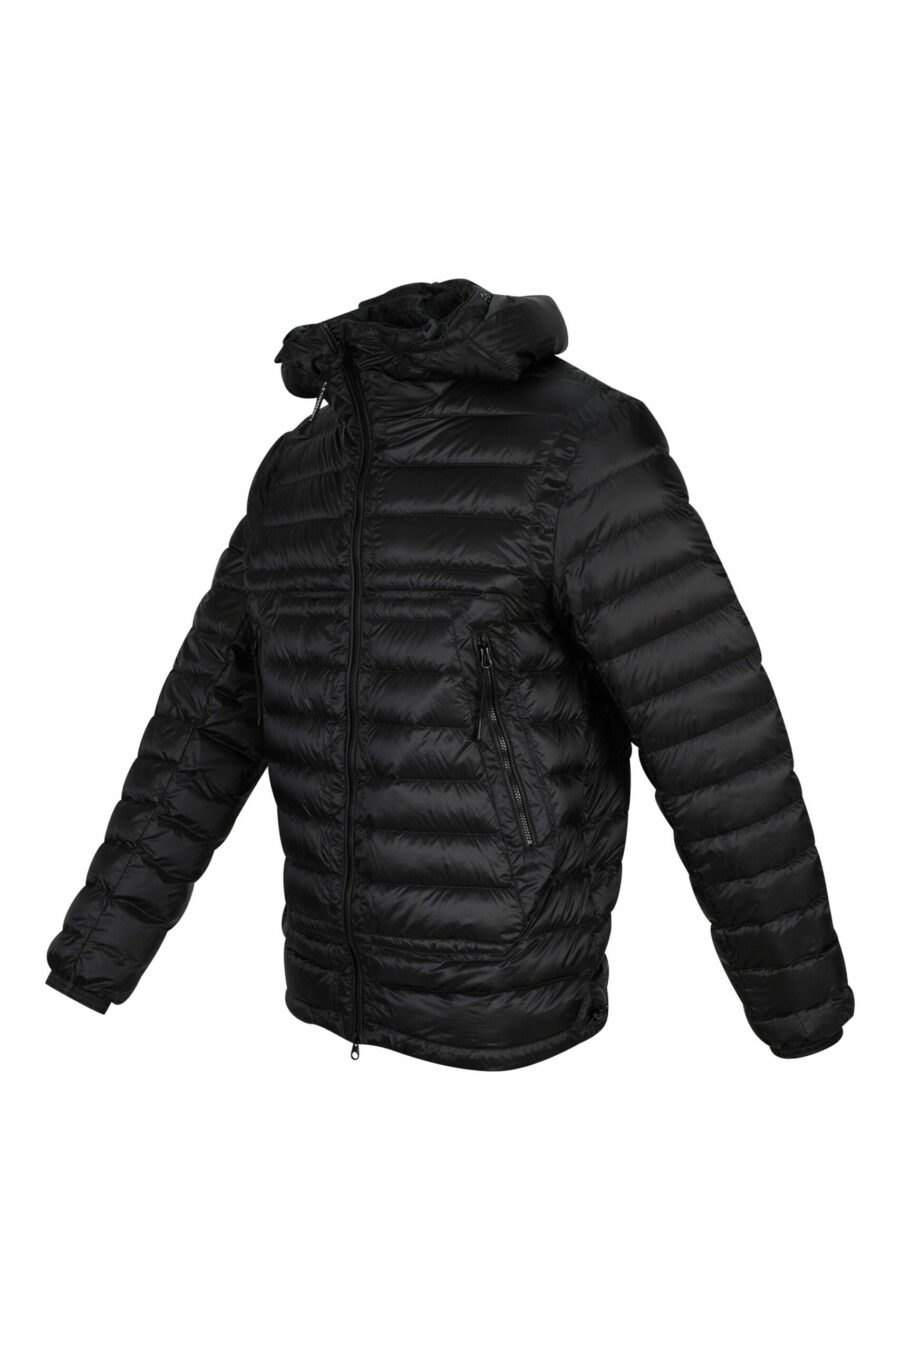 Black hooded jacket with goggle logo - 7620943629262 1 scaled